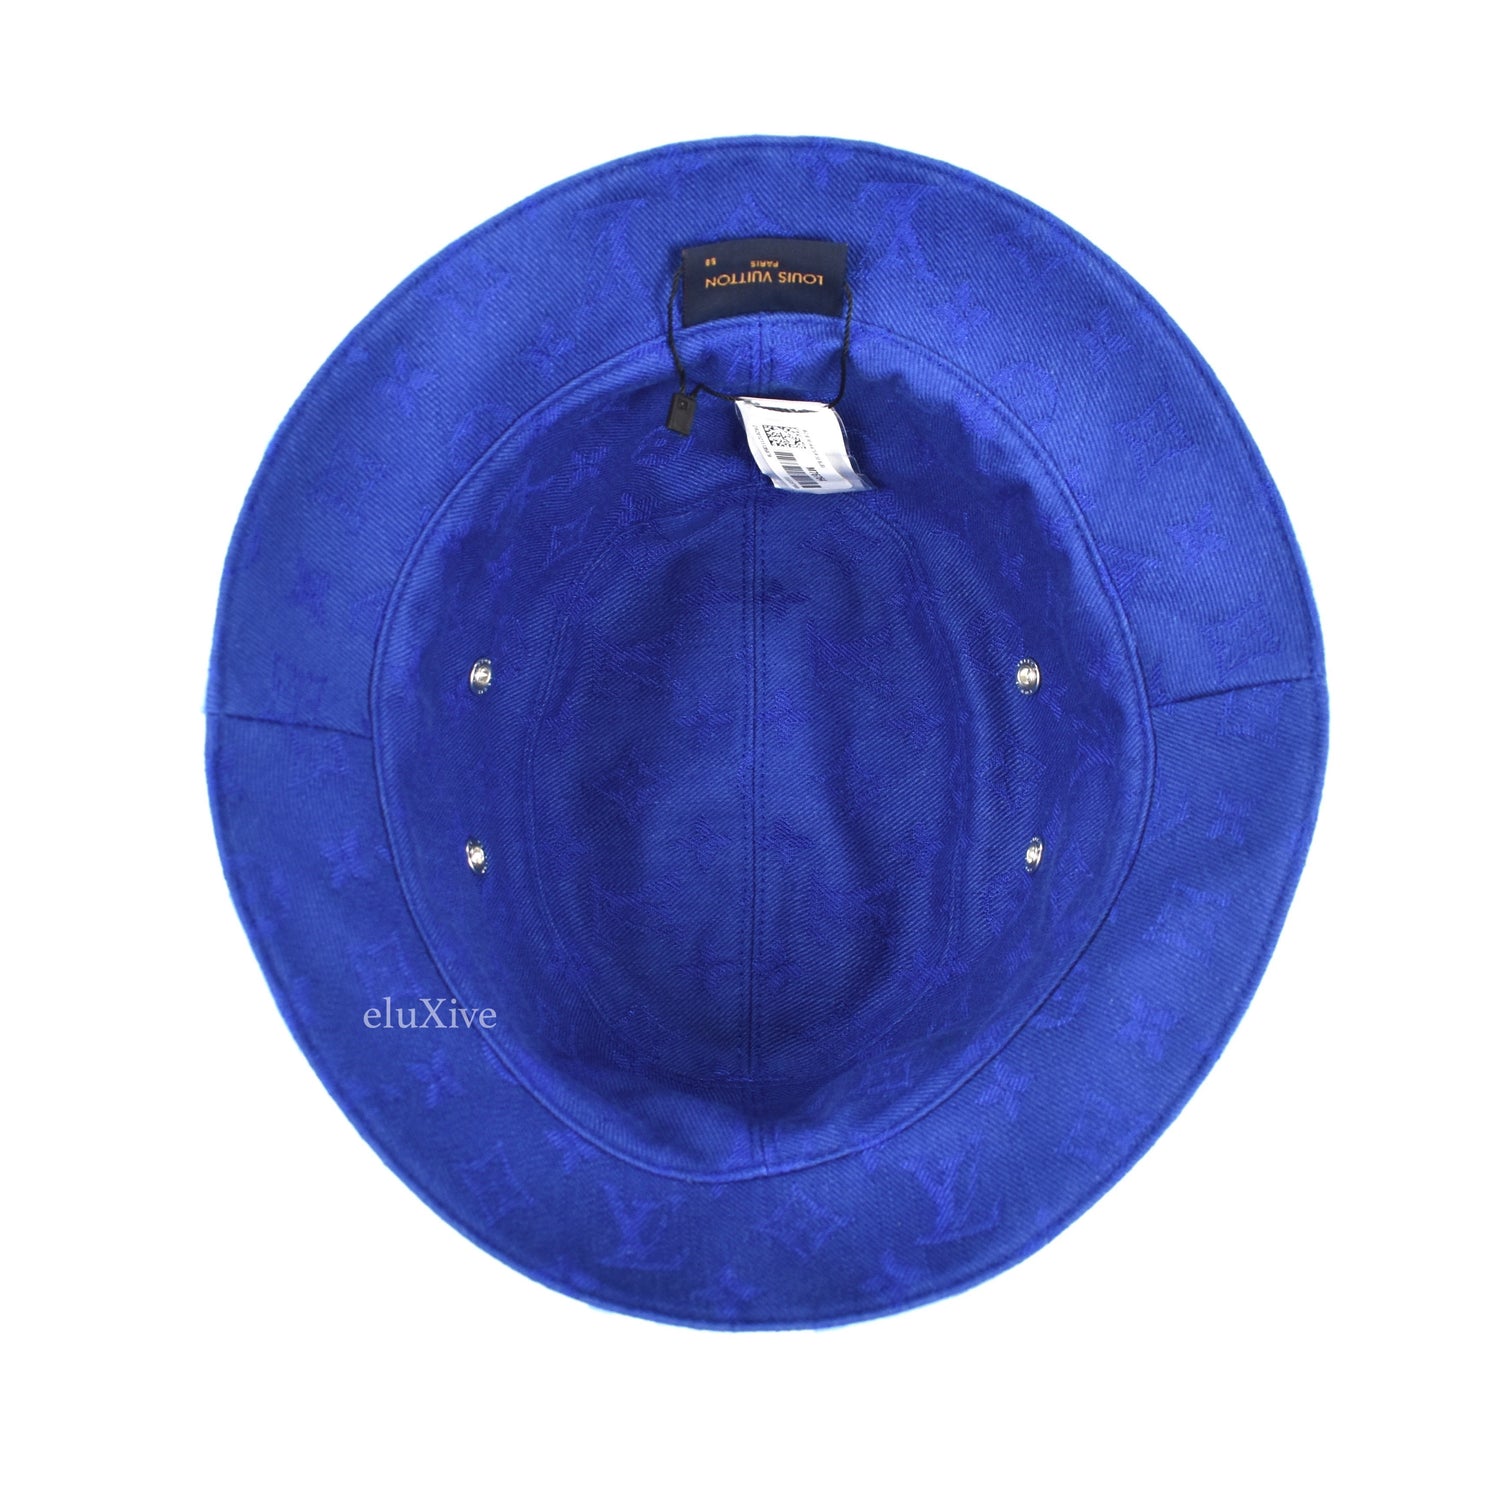 NWT Louis Vuitton Beige Monogram Reversible Rain Bucket Hat Men's SS23  AUTHENTIC